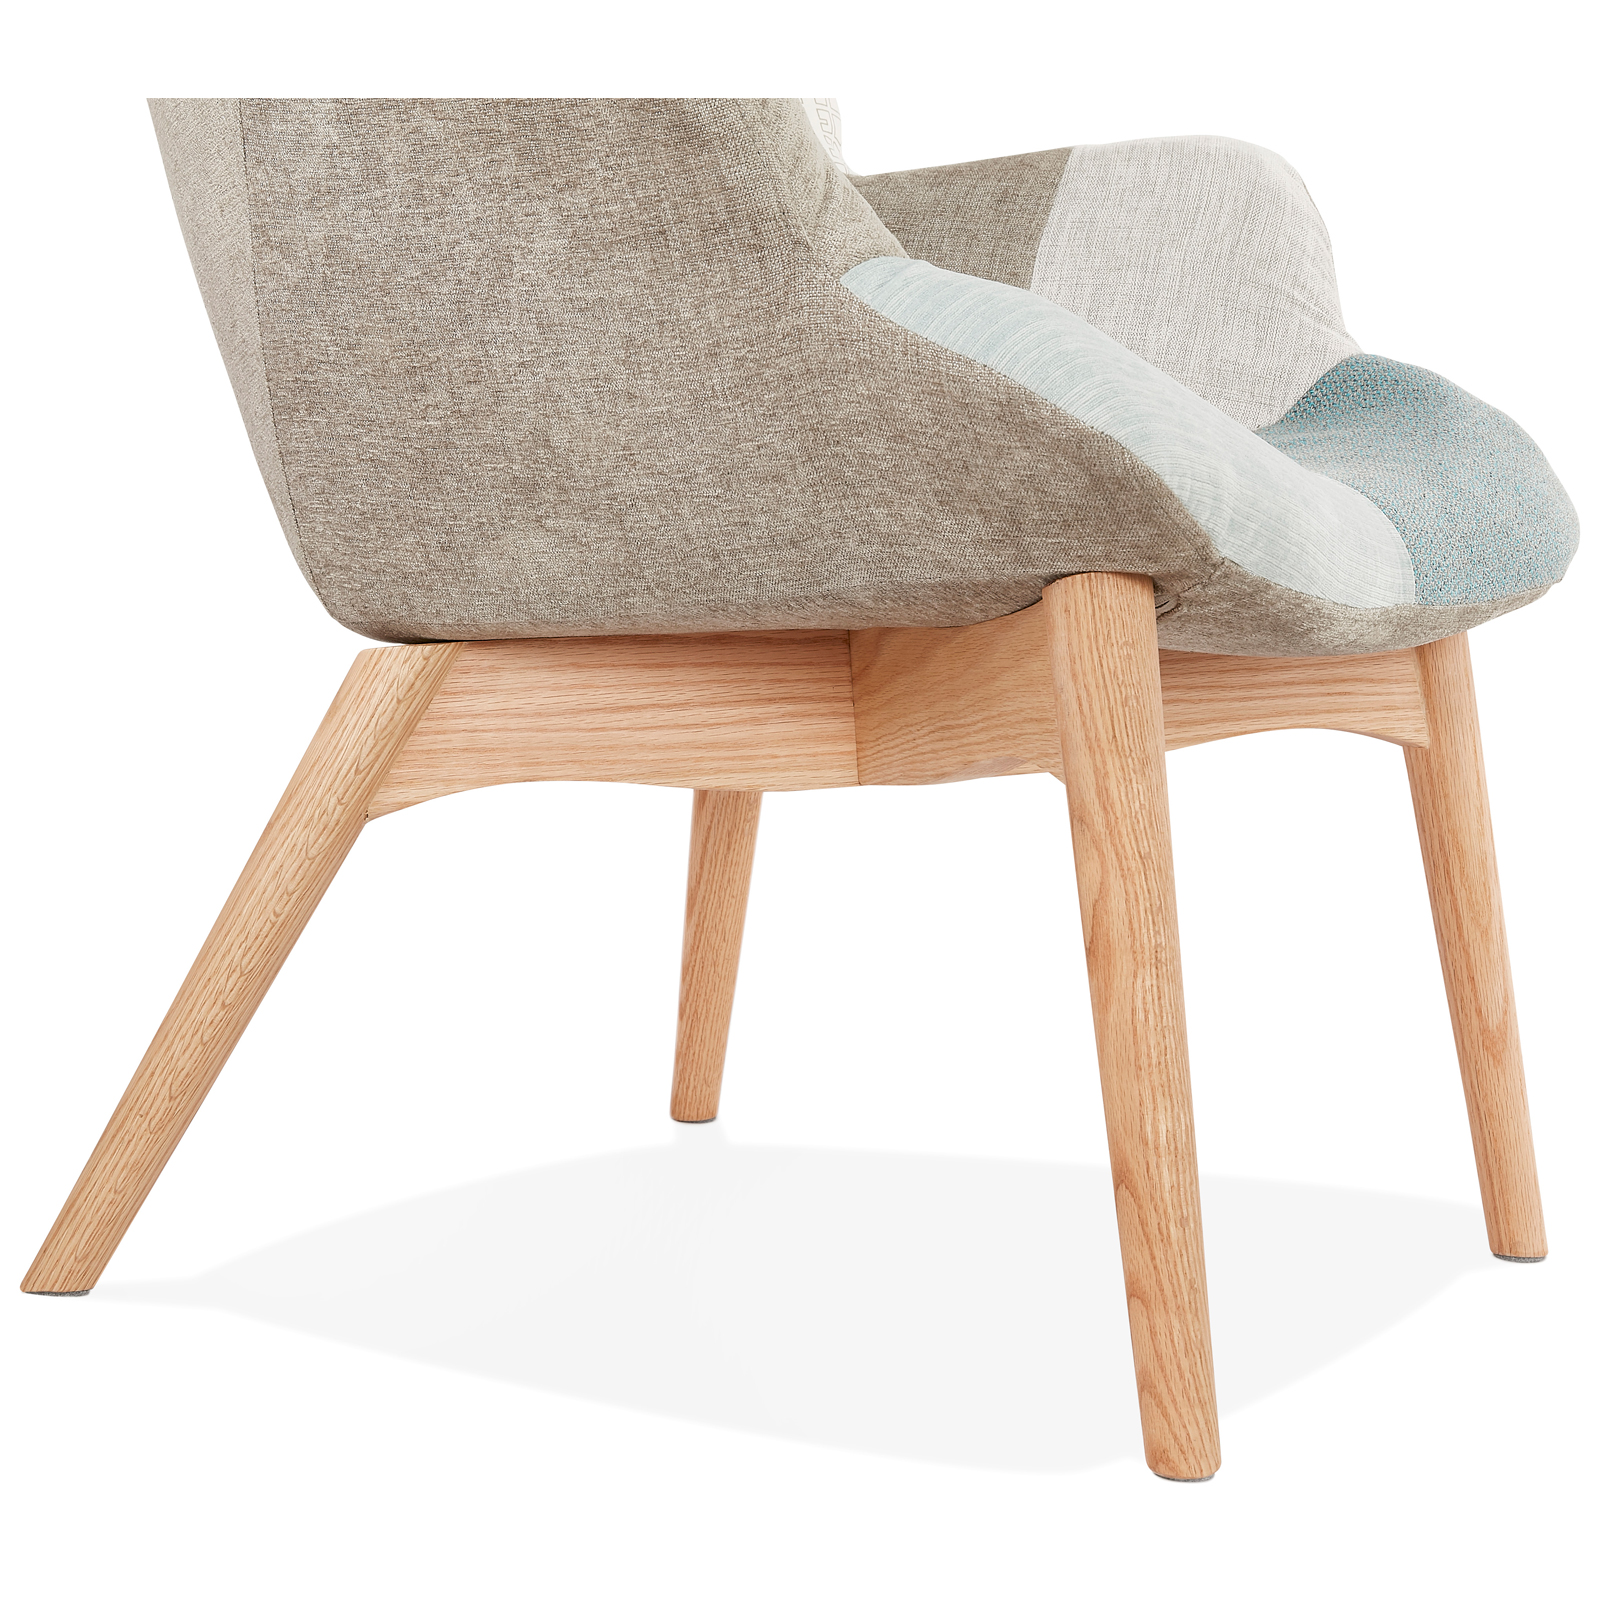 Productie blootstelling Onhandig Design fauteuil Scandinavisch Marijke kopen? Shop bij Kameraankleden.nl